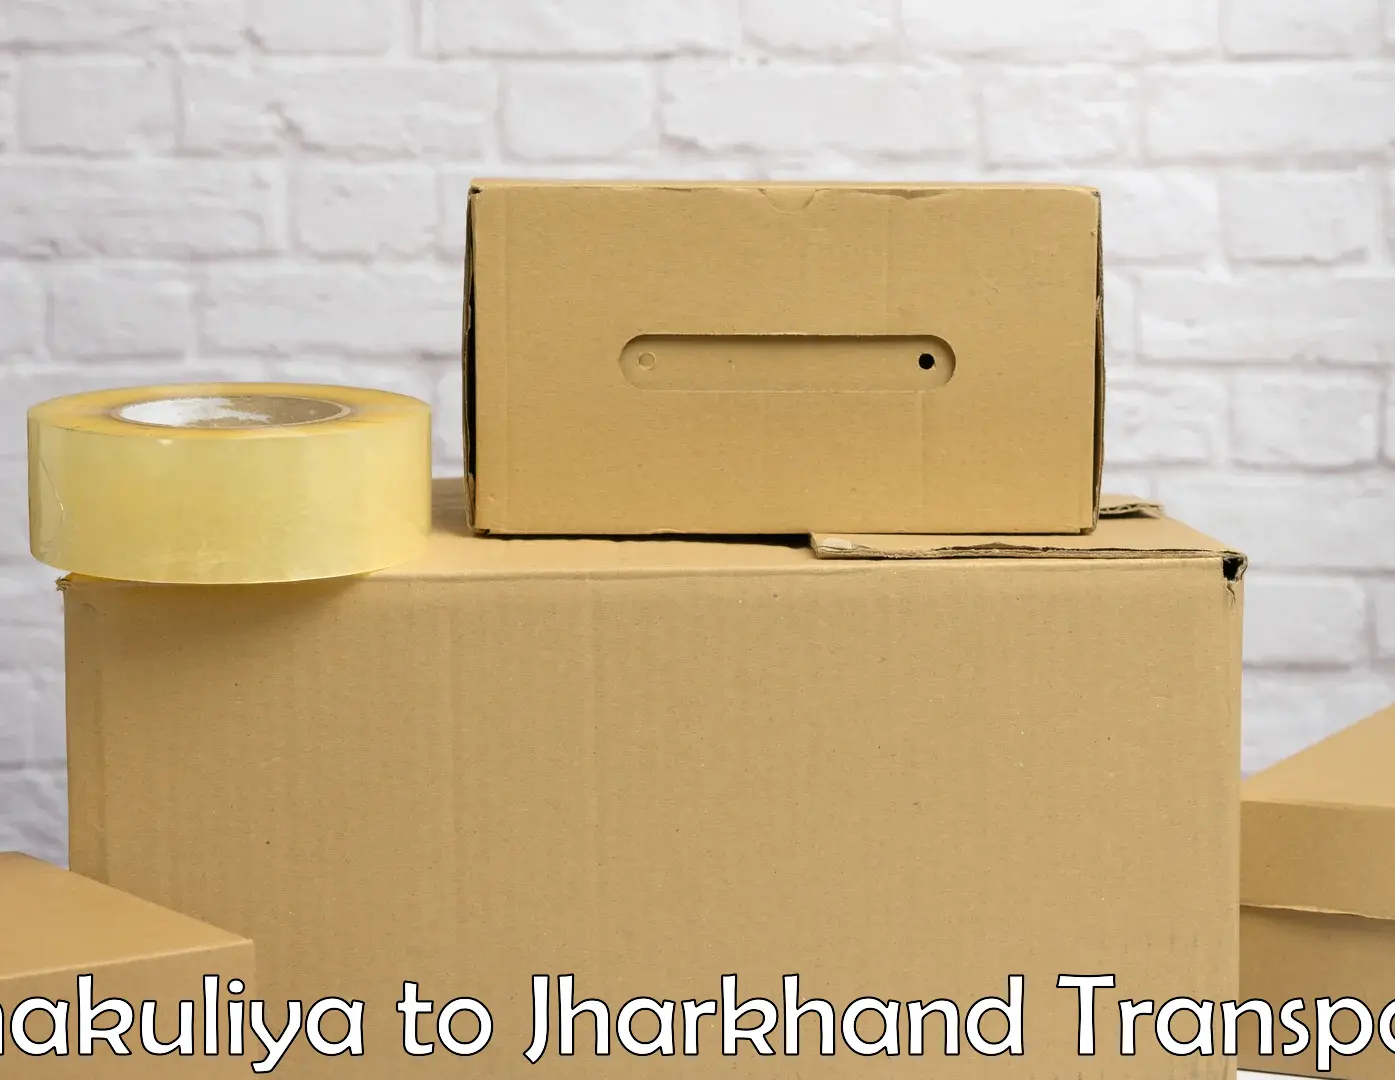 Container transport service Chakuliya to Shikaripara